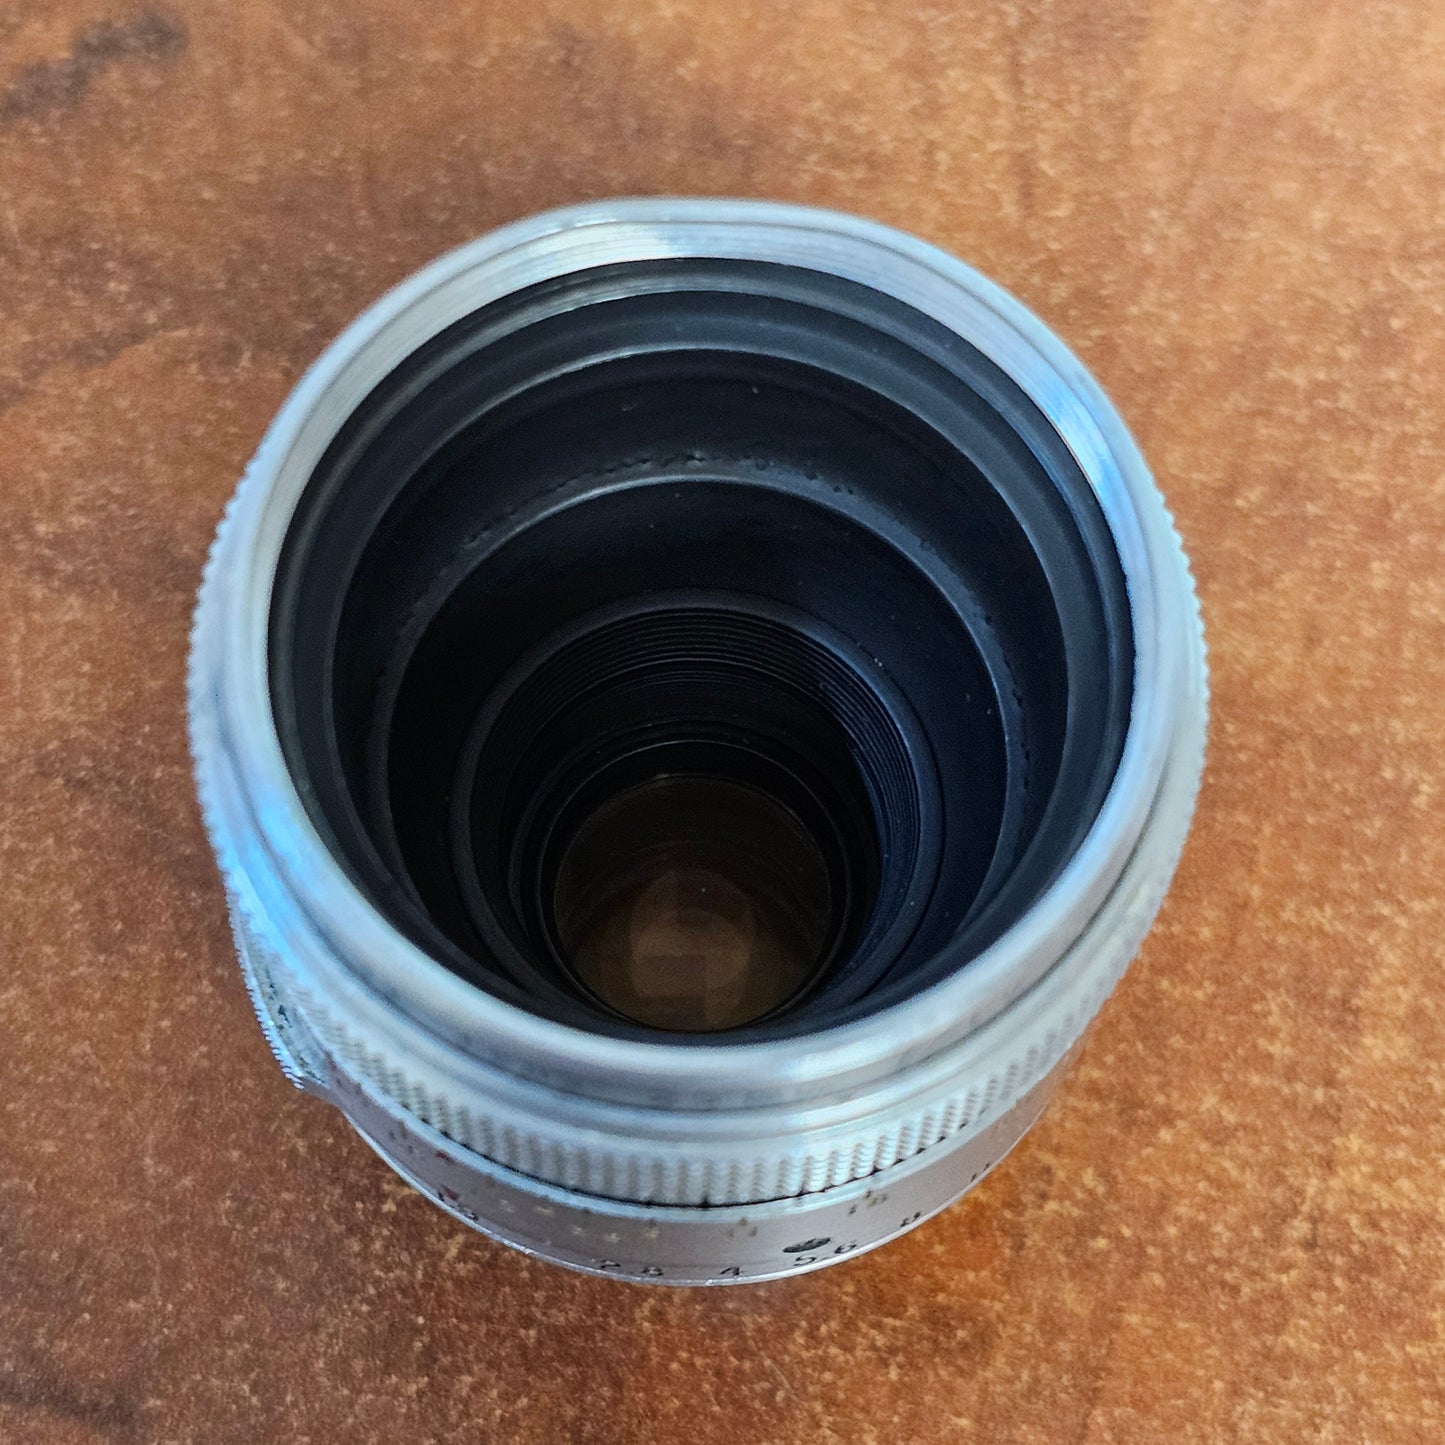 Kodak Cine Ektar II 25mm f1.9 Lens